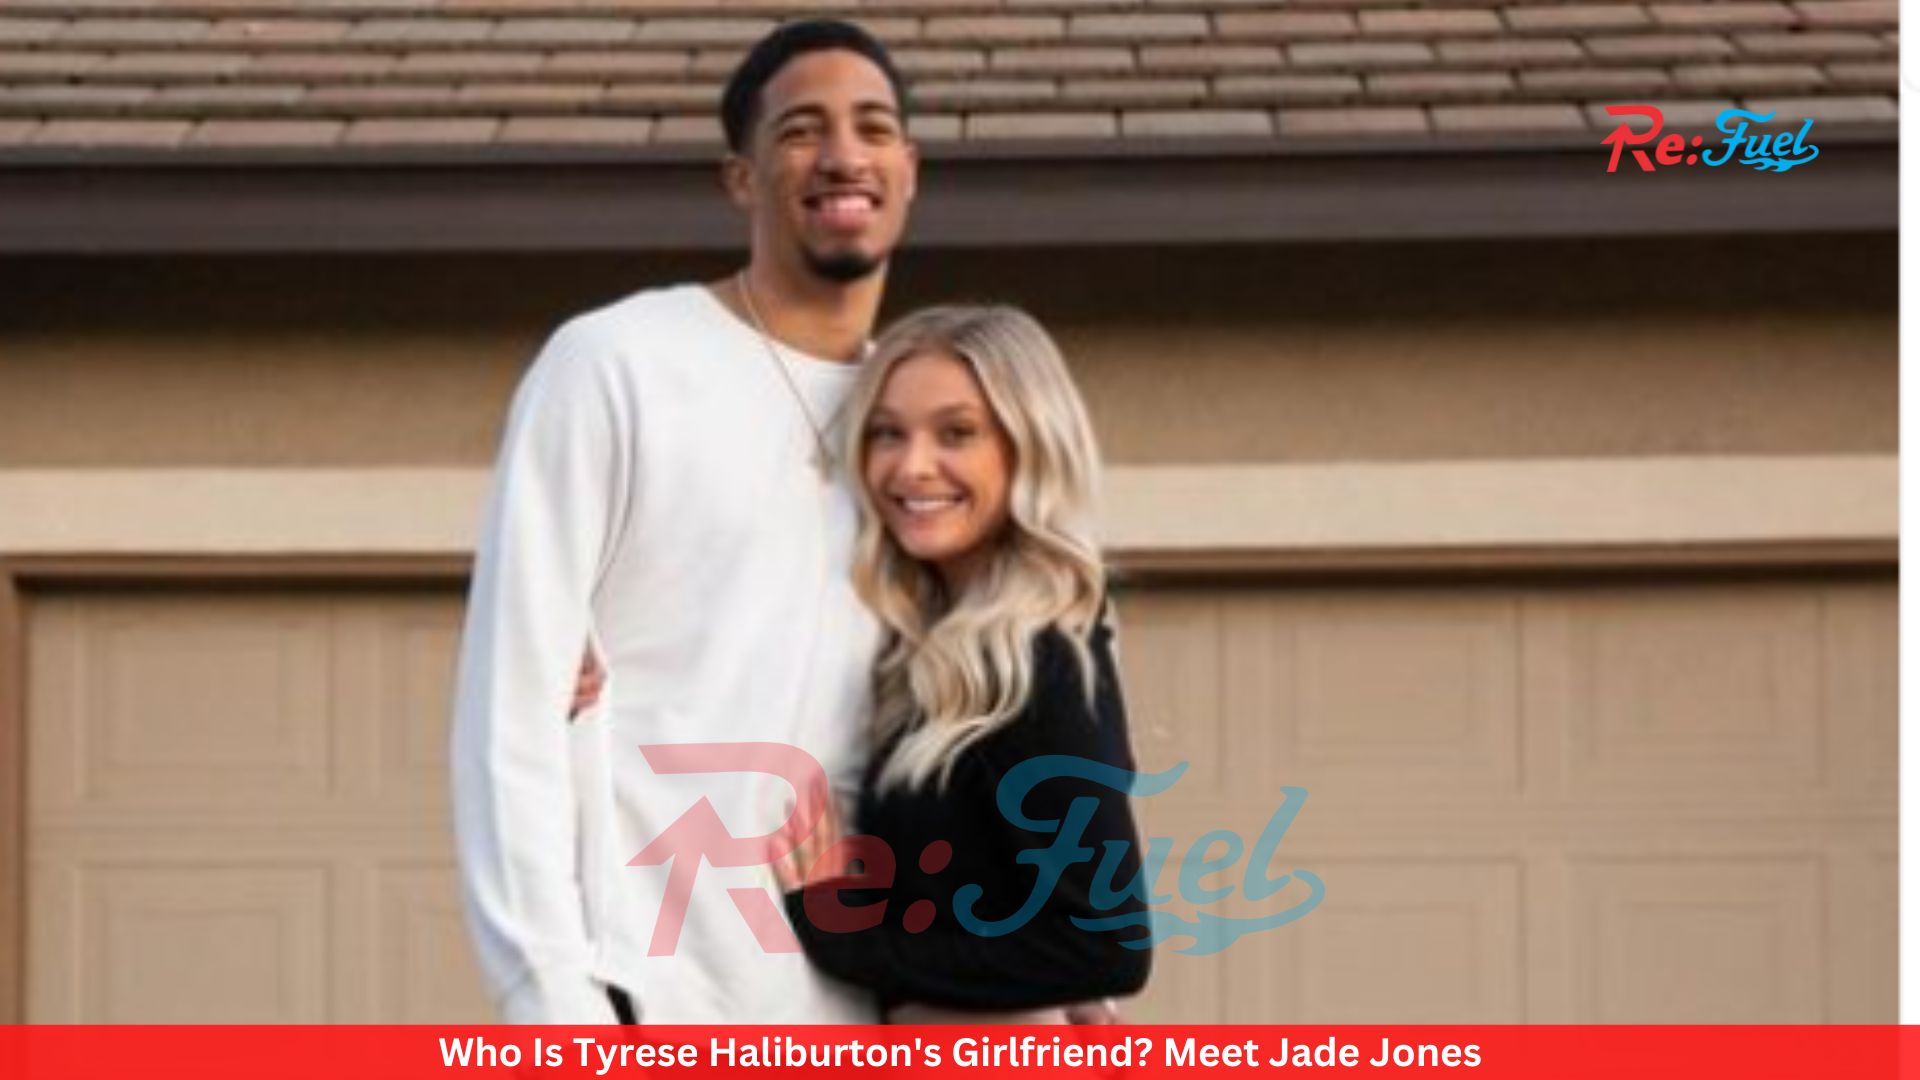 Who Is Tyrese Haliburton's Girlfriend? Meet Jade Jones